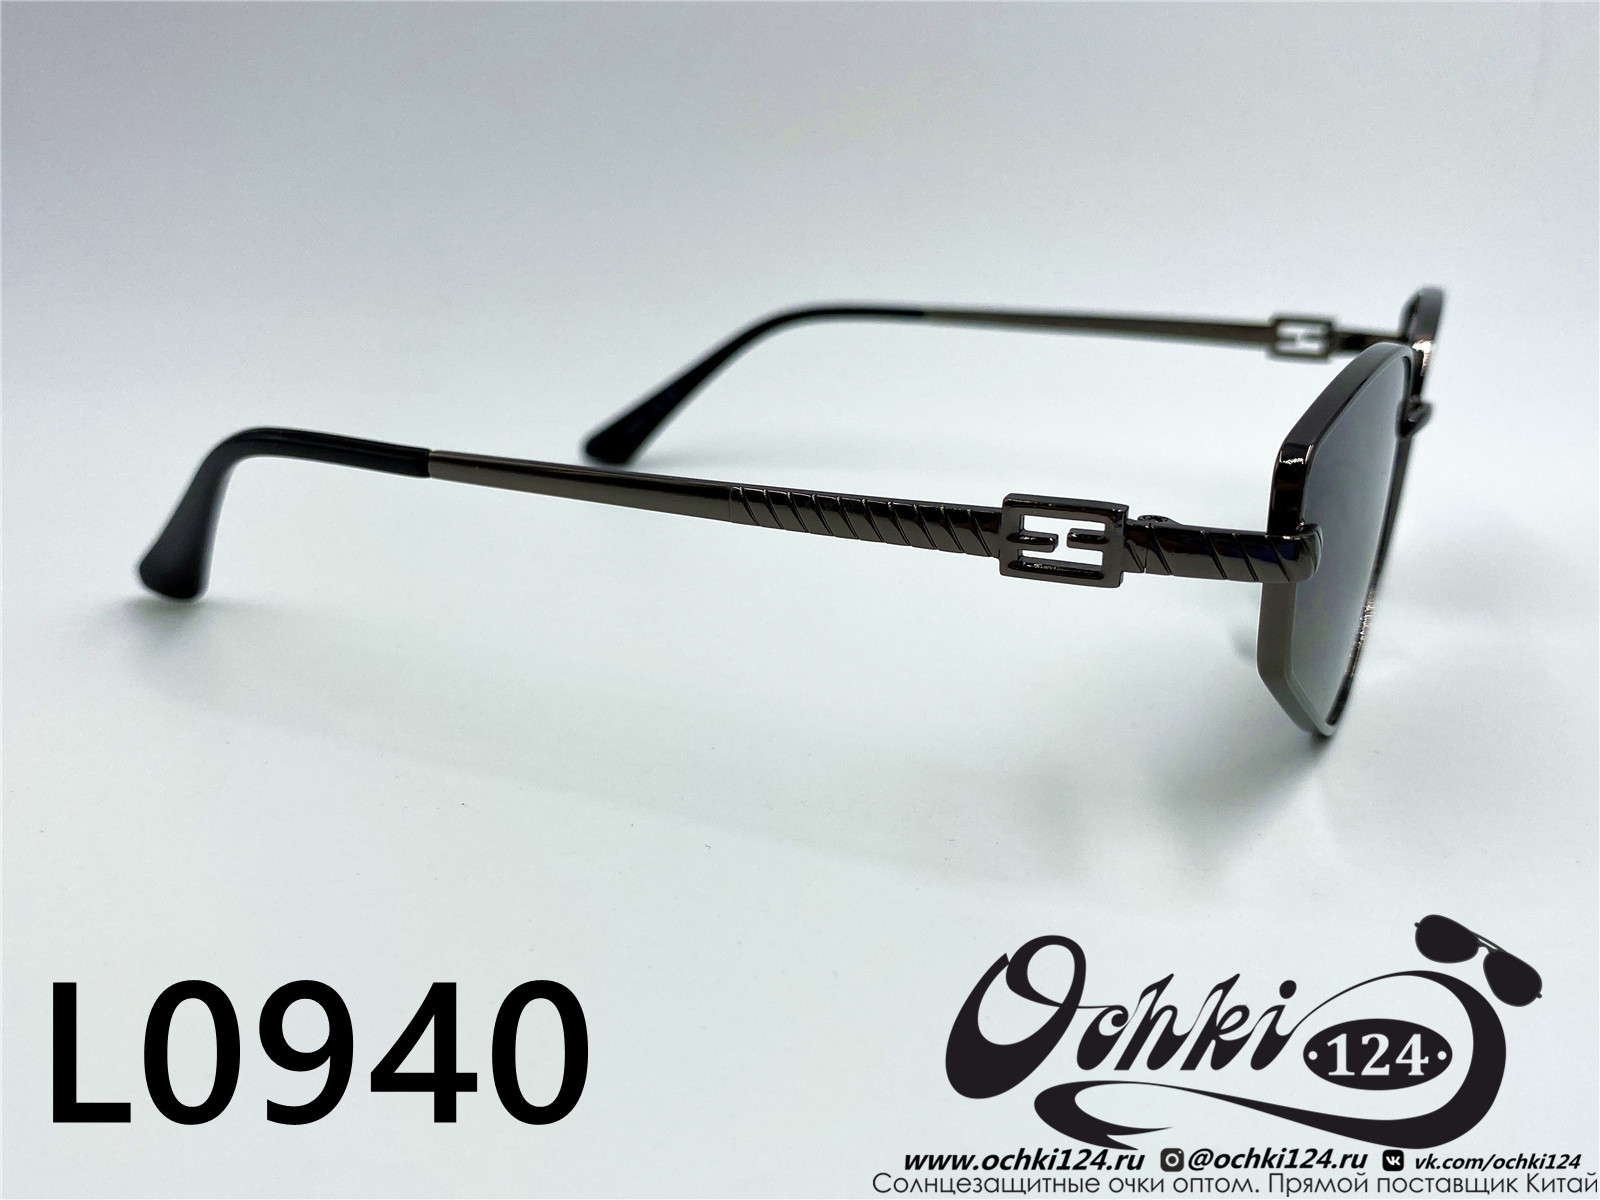  Солнцезащитные очки картинка 2022 Женские Лисички L0940-6 